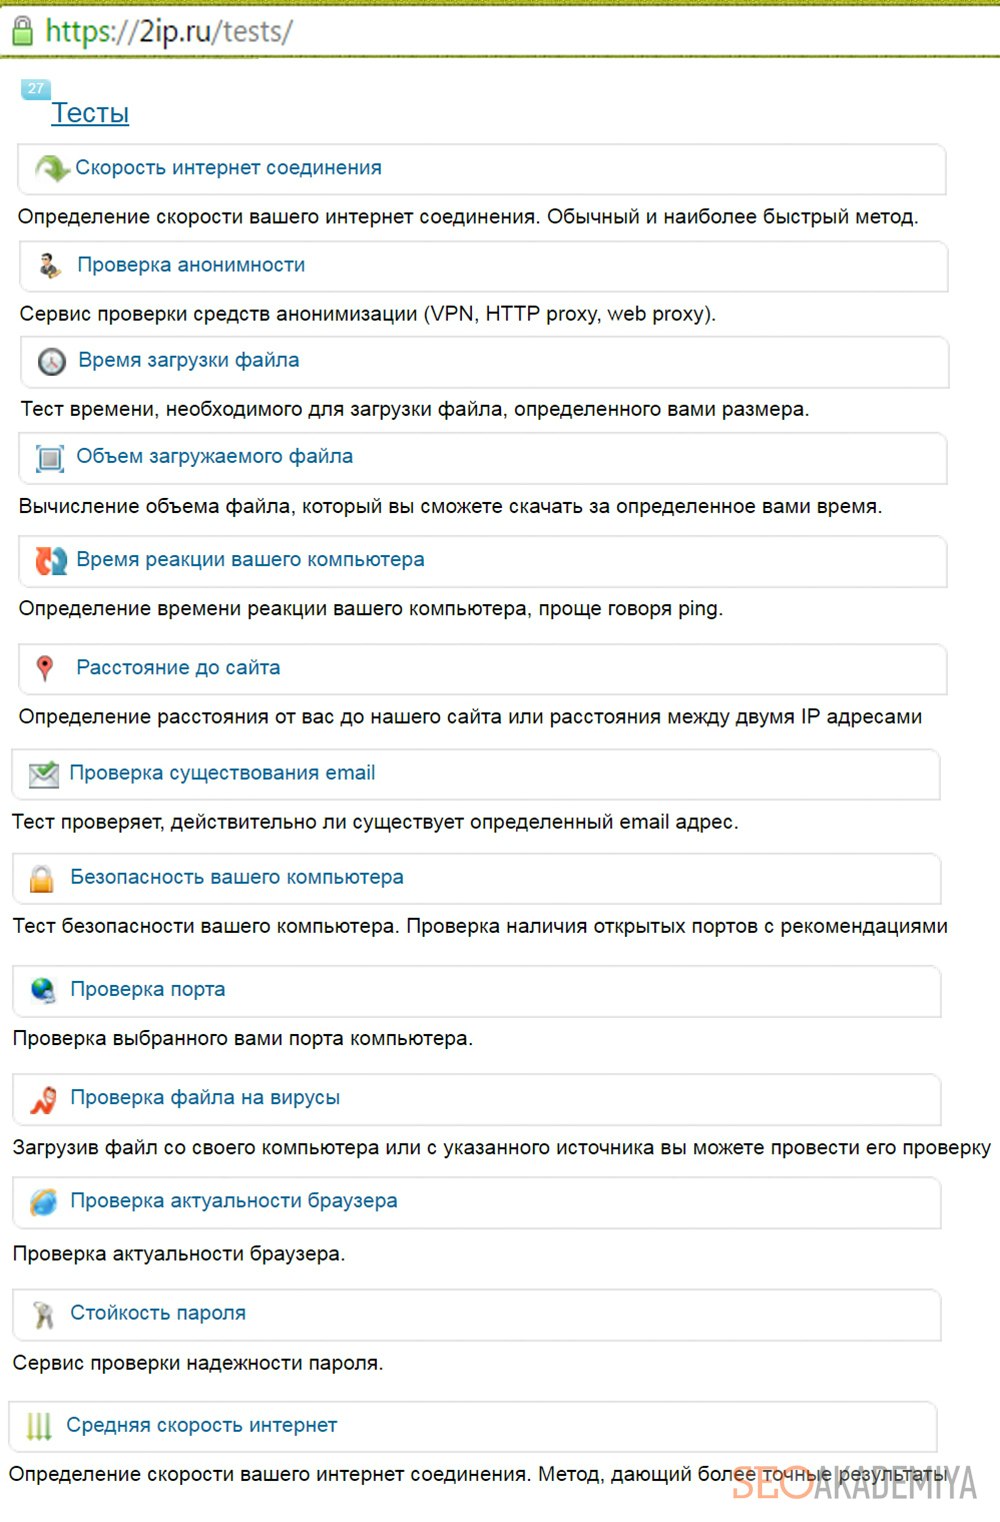 Простые тесты на 2ip.ru